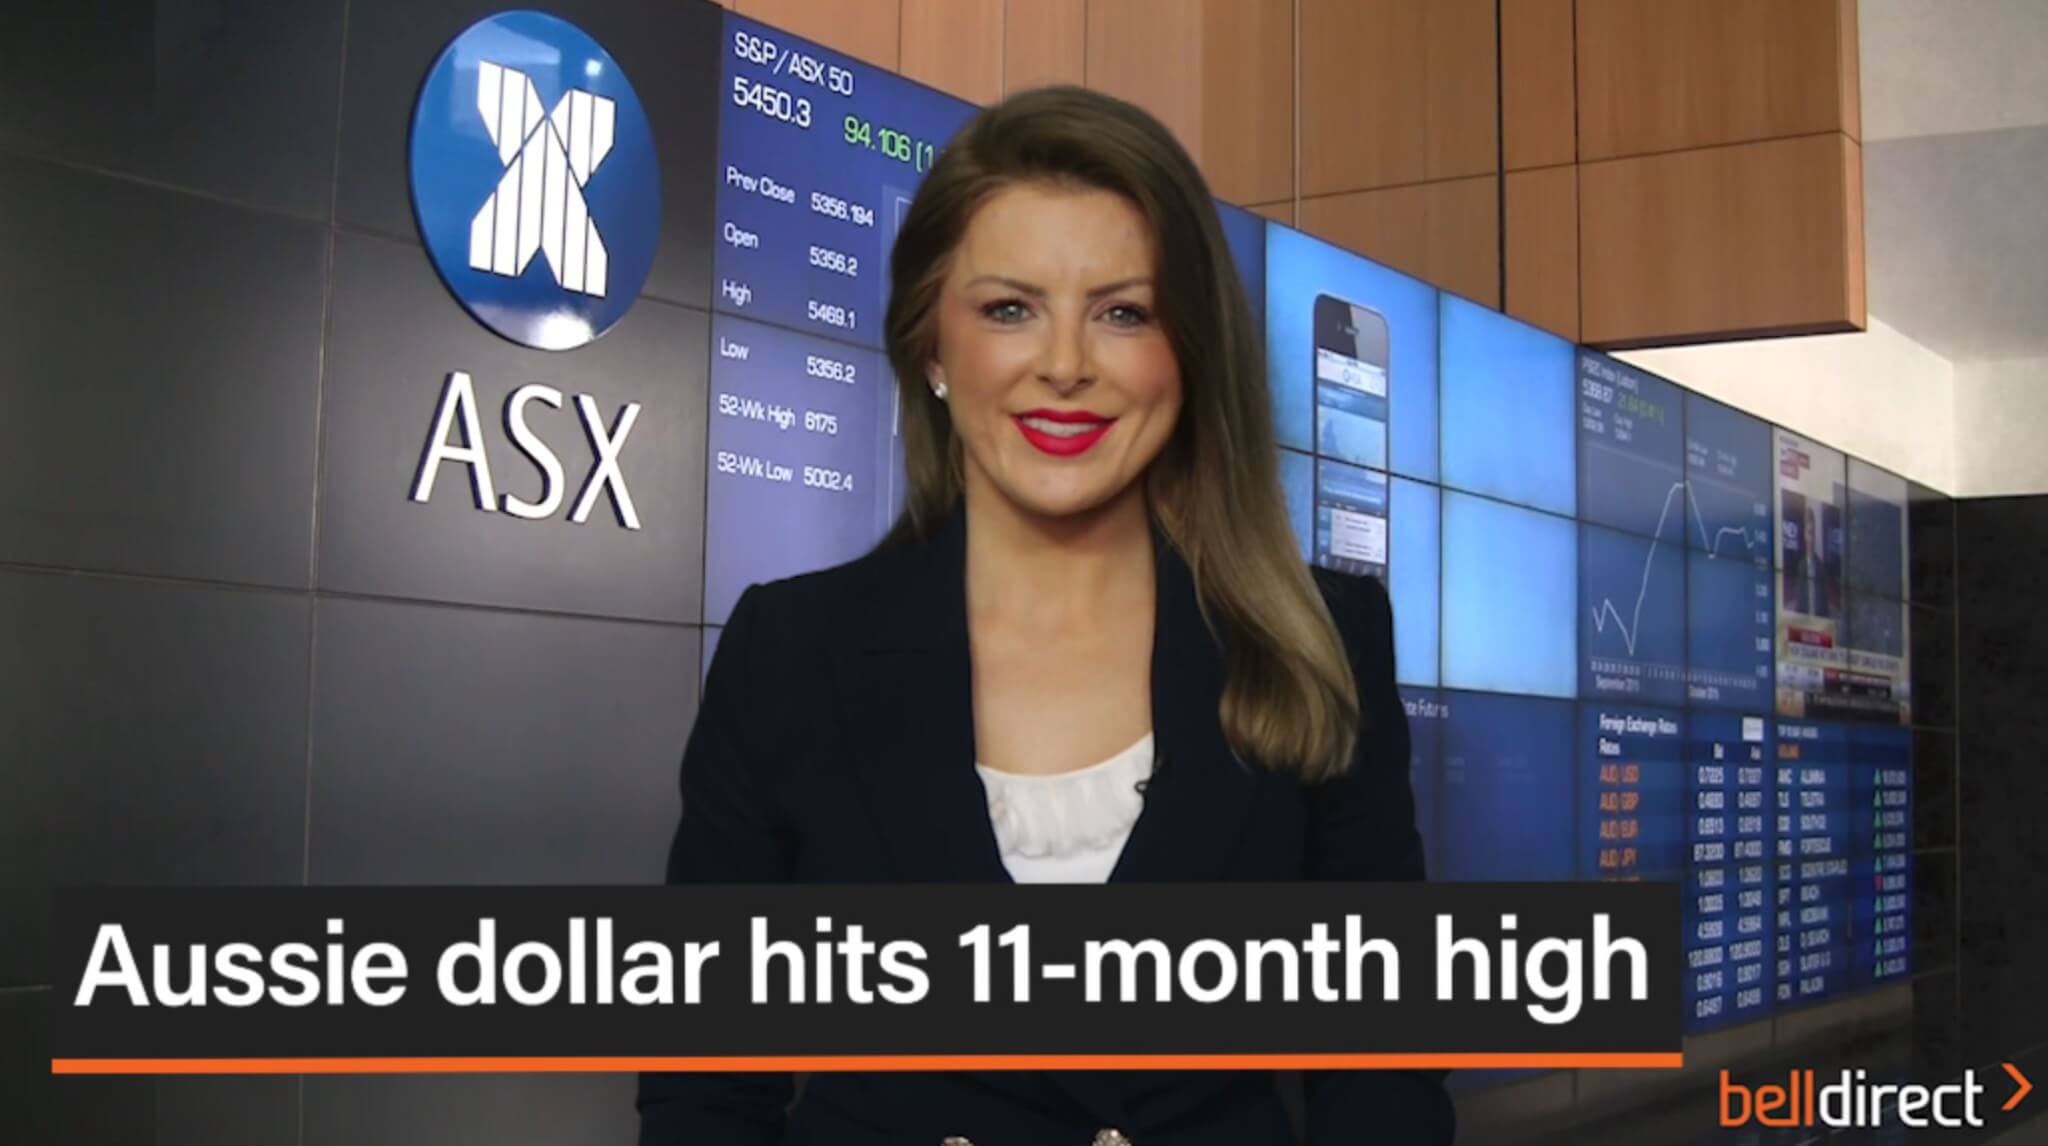 Aussie dollar hits 11-month high